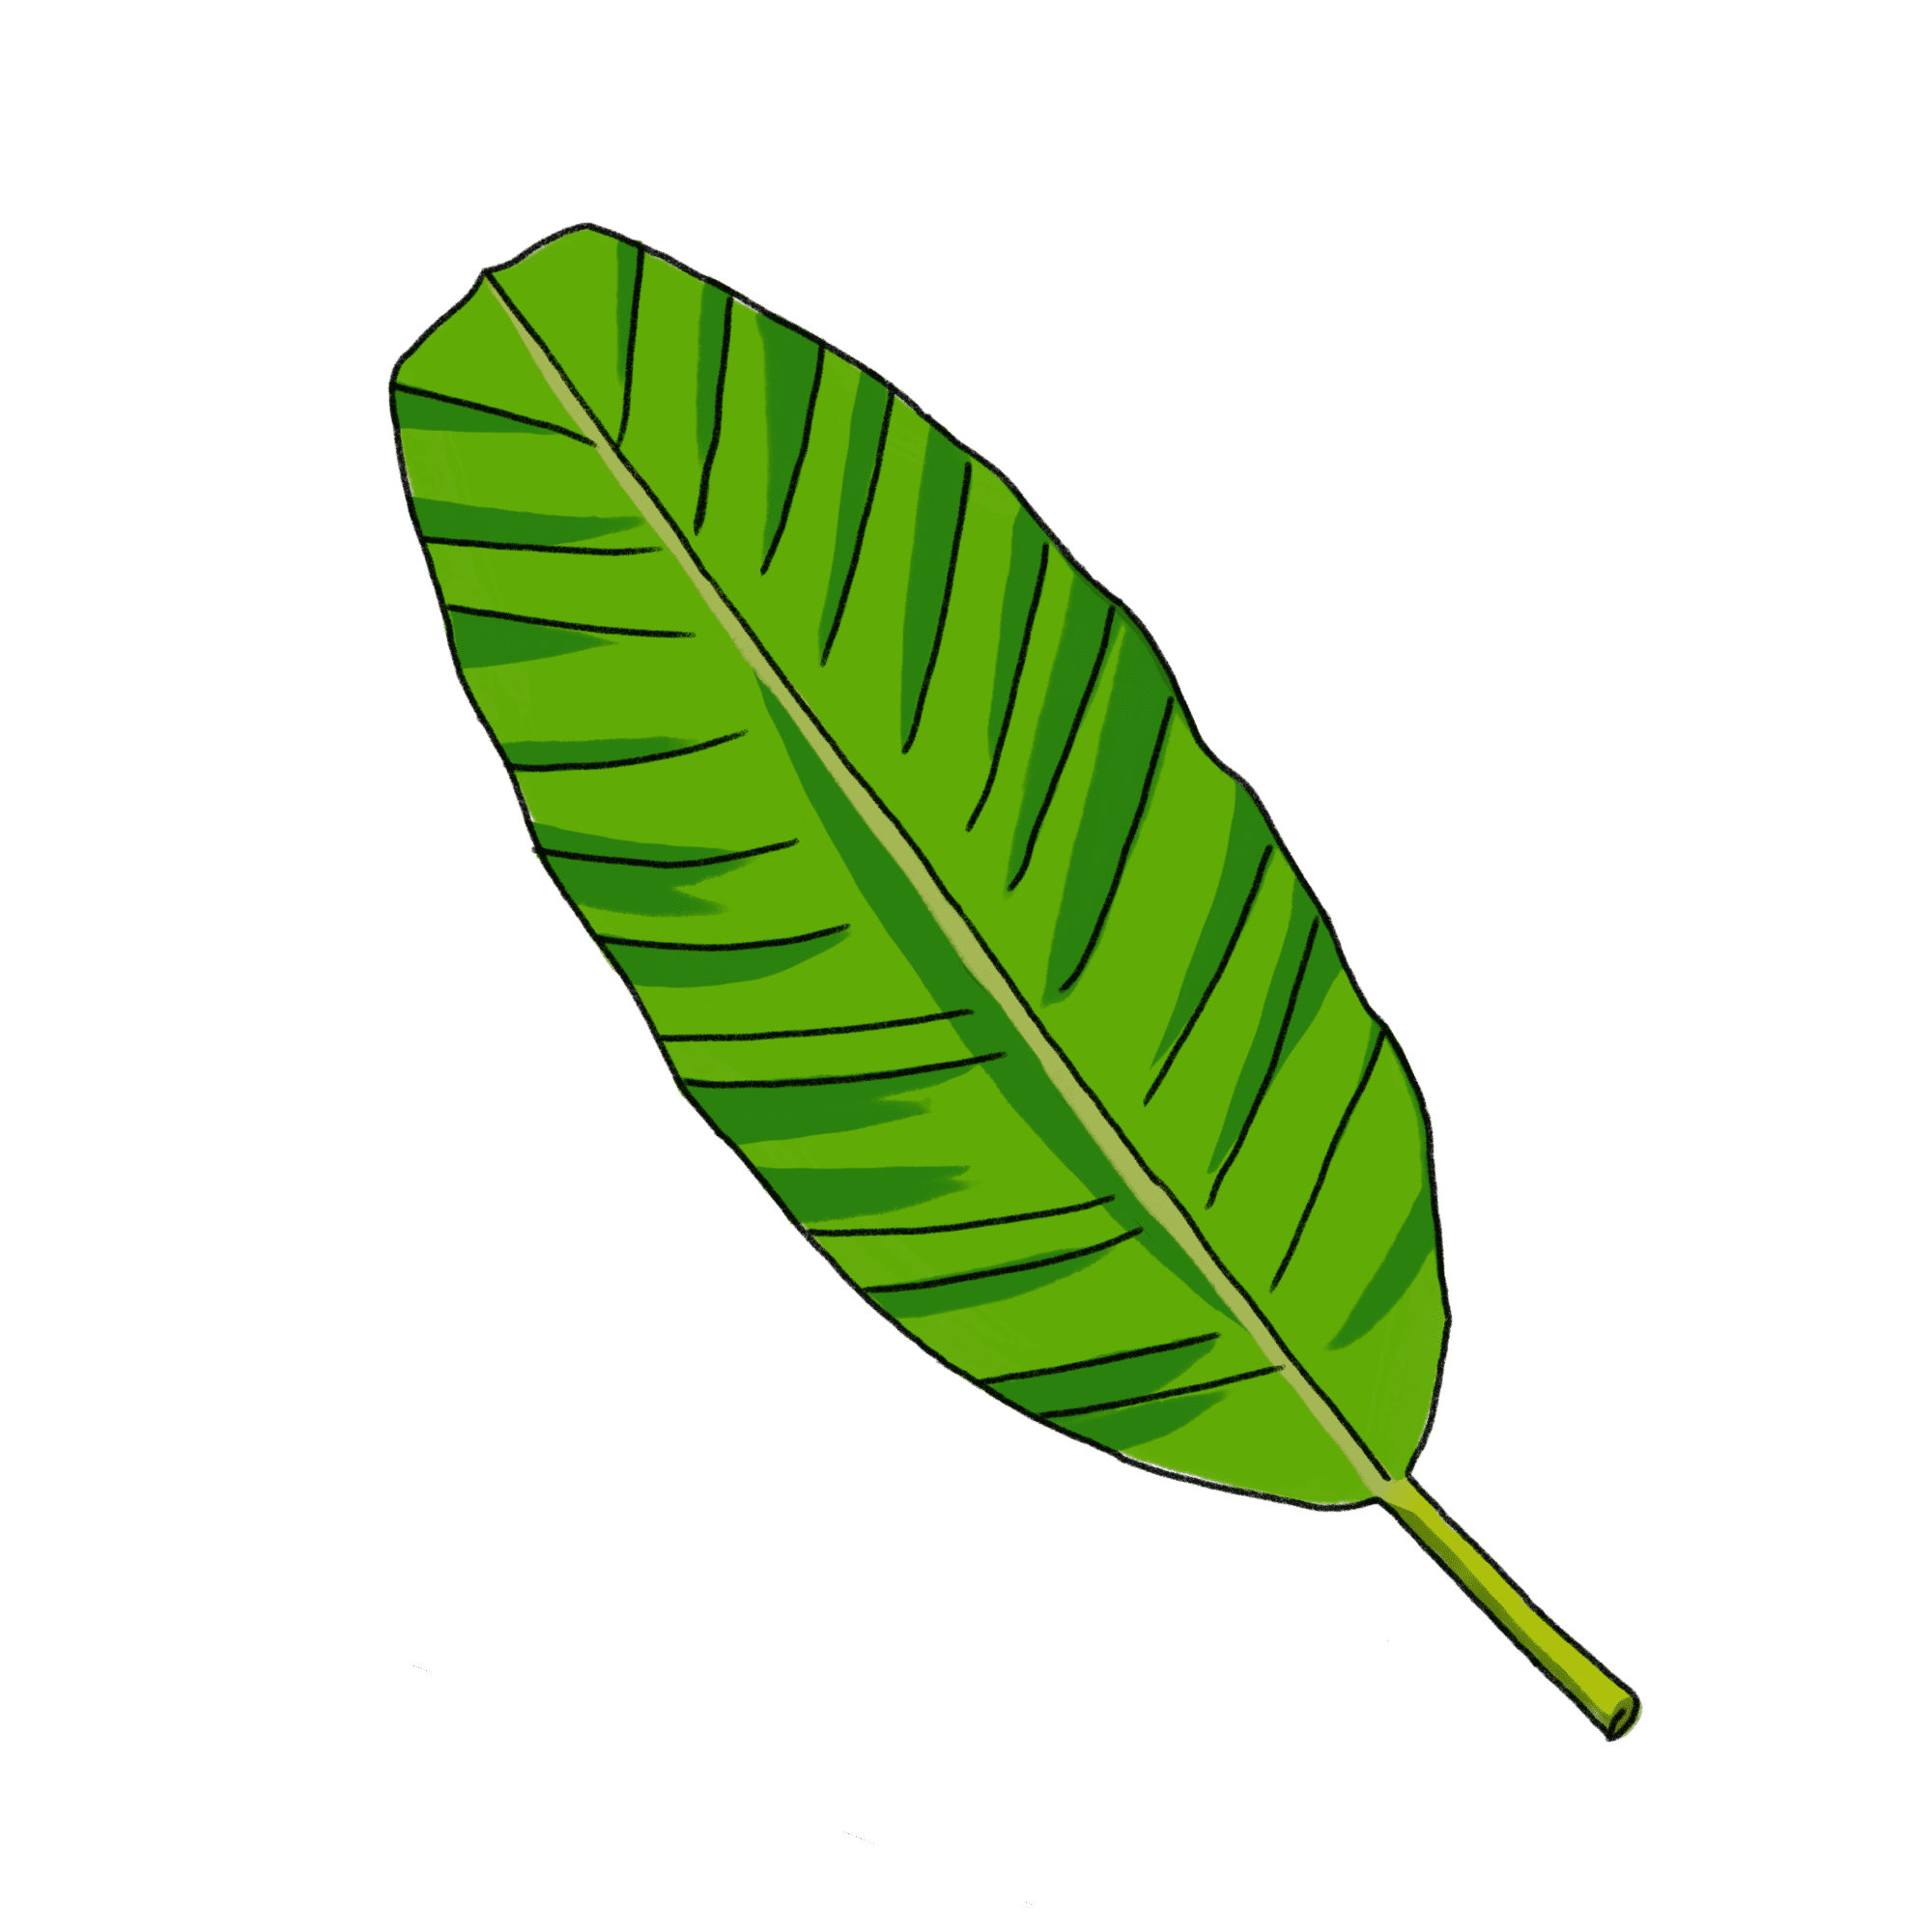 バナナの葉のイラスト 02 フリー素材 Greenstock40